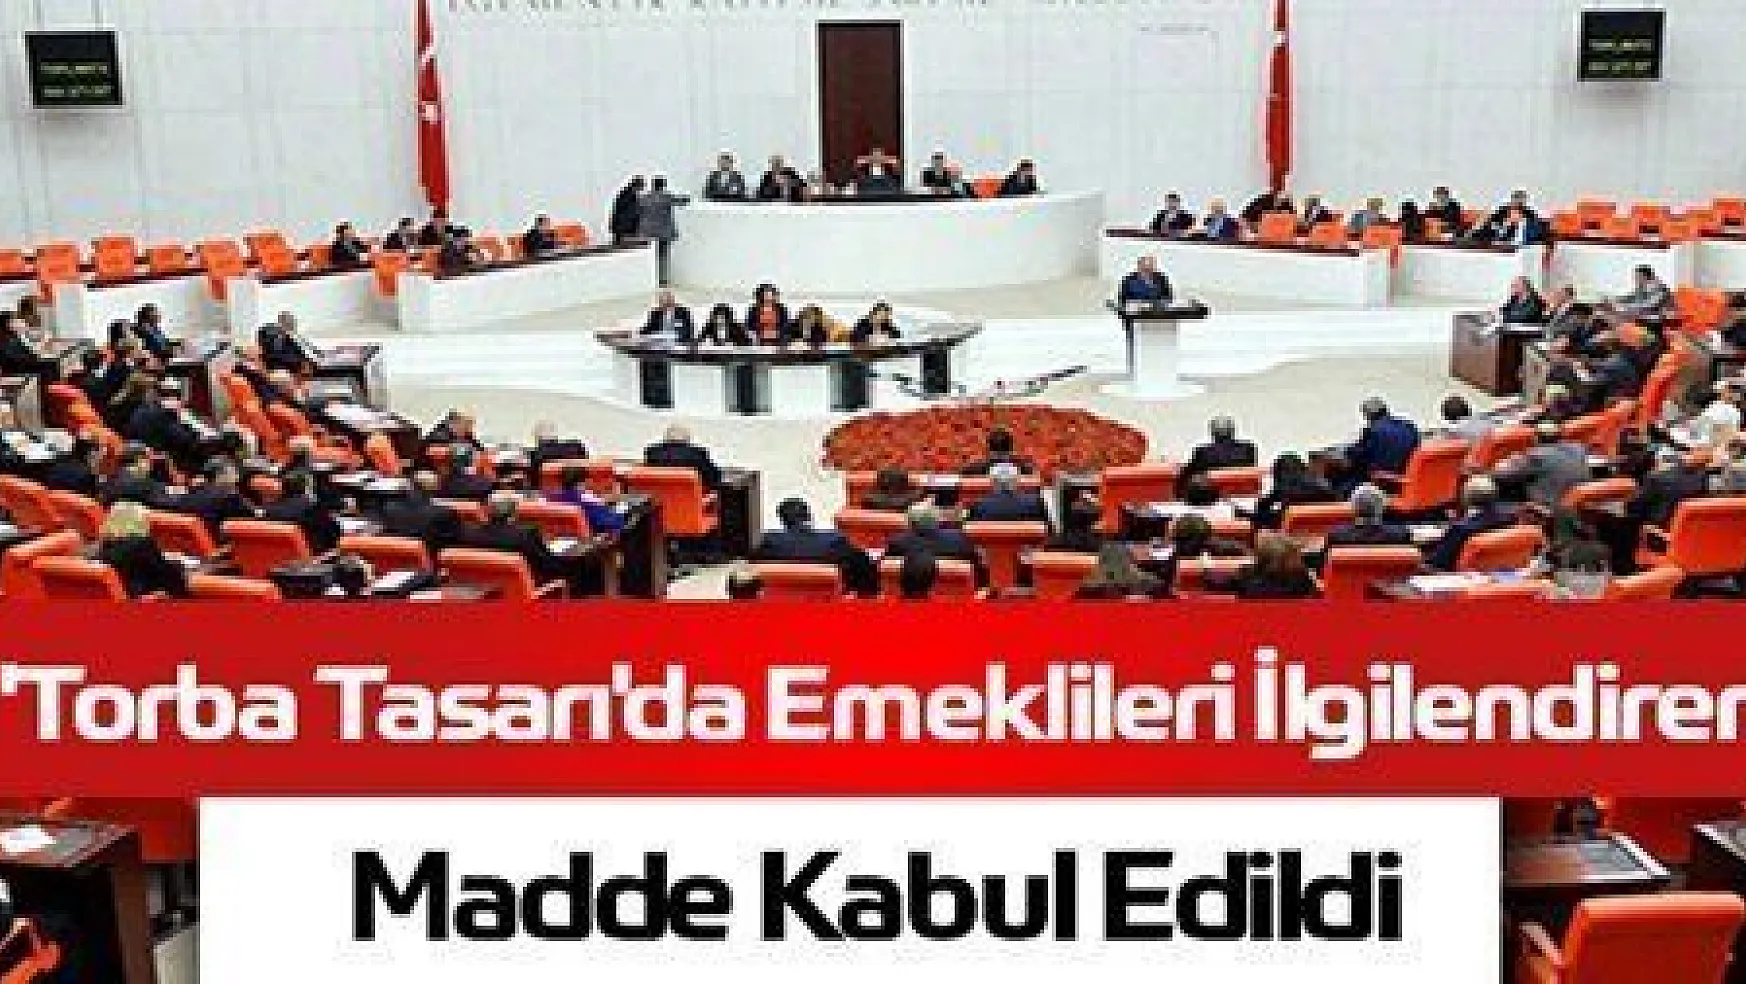 TORBA TASARININ EMEKLİLERİ İLGİLENDİREN MADDESİ KABUL EDİLDİ...